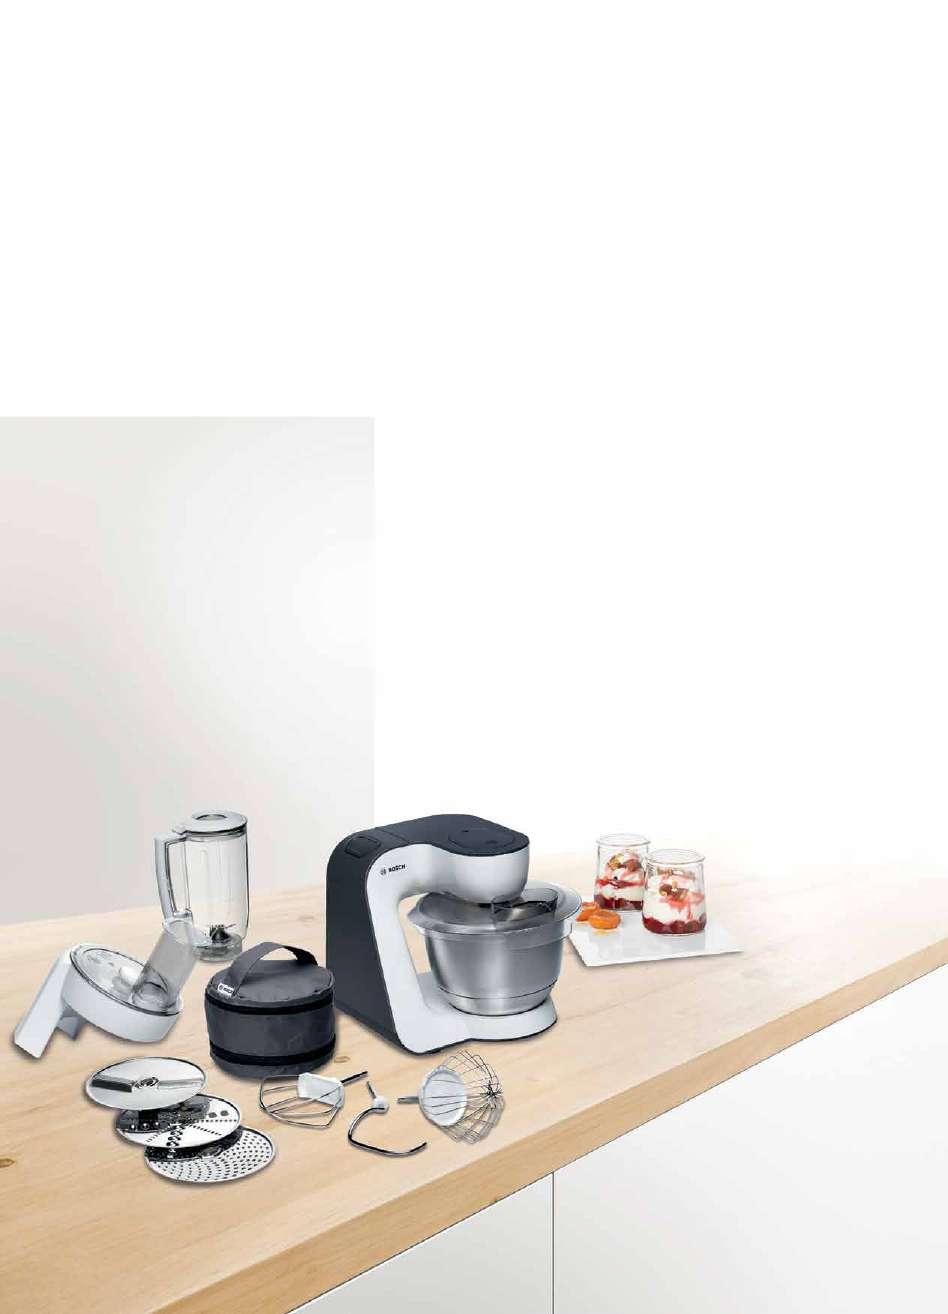 Vásároljon 2018.01.01. - 02.28. között Bosch Serie 8 sütőt, mely mellé most a tökéletes segítőtársat, egy 92.190 Ft értékű* MUM52120 konyhai robotgépet adunk ajándékba tartozékaival együtt.